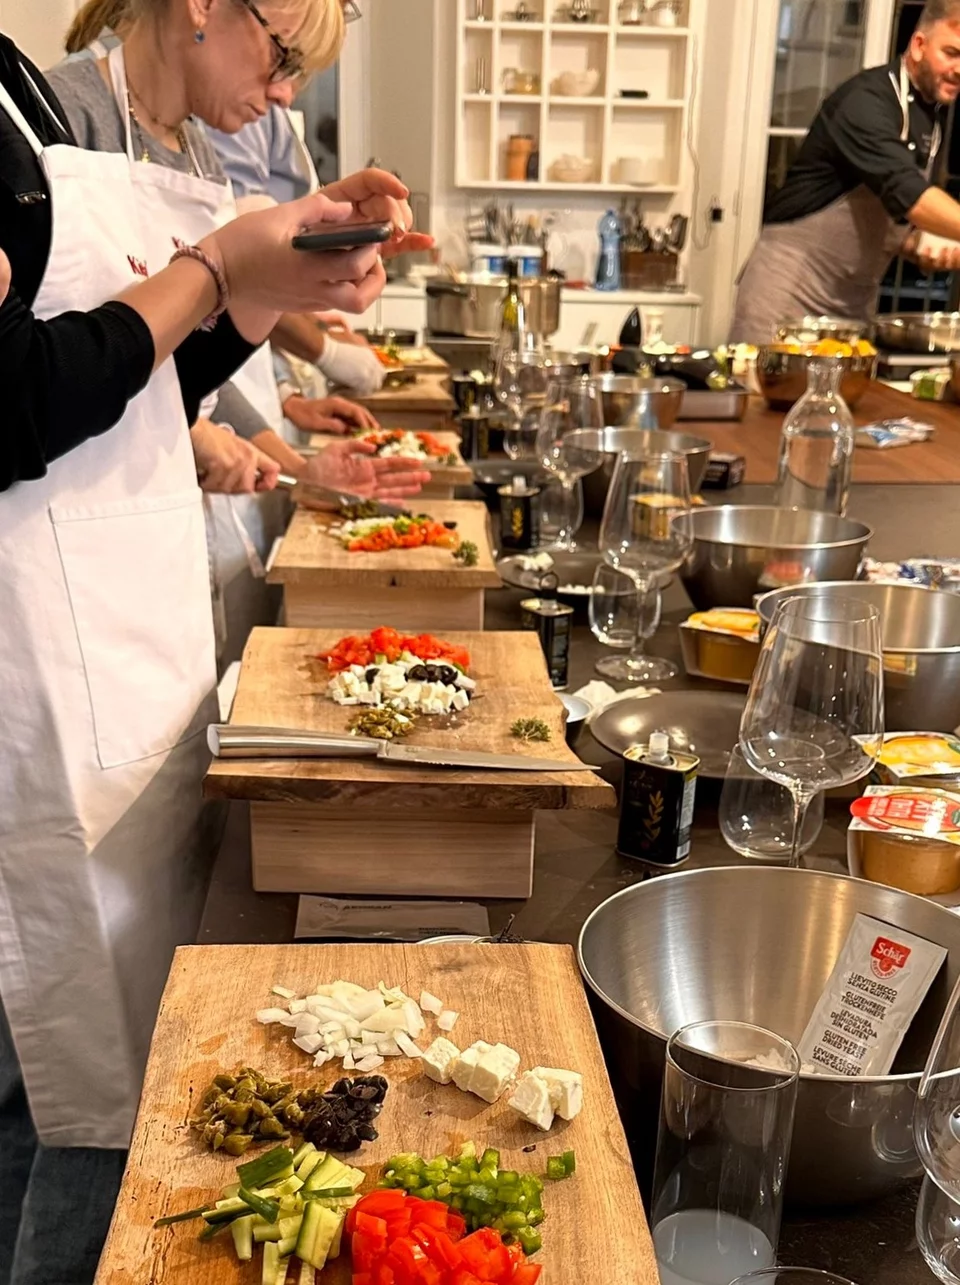 Oι Ιταλοί foodies ακολουθούν τις οδηγίες του σεφ Βασίλη Παπικινού για να φτιάξουν focaccia di insalata greca - ελληνική χωριάτικη σαλάτα πάνω σε τραγανή ιταλική φοκάτσια.